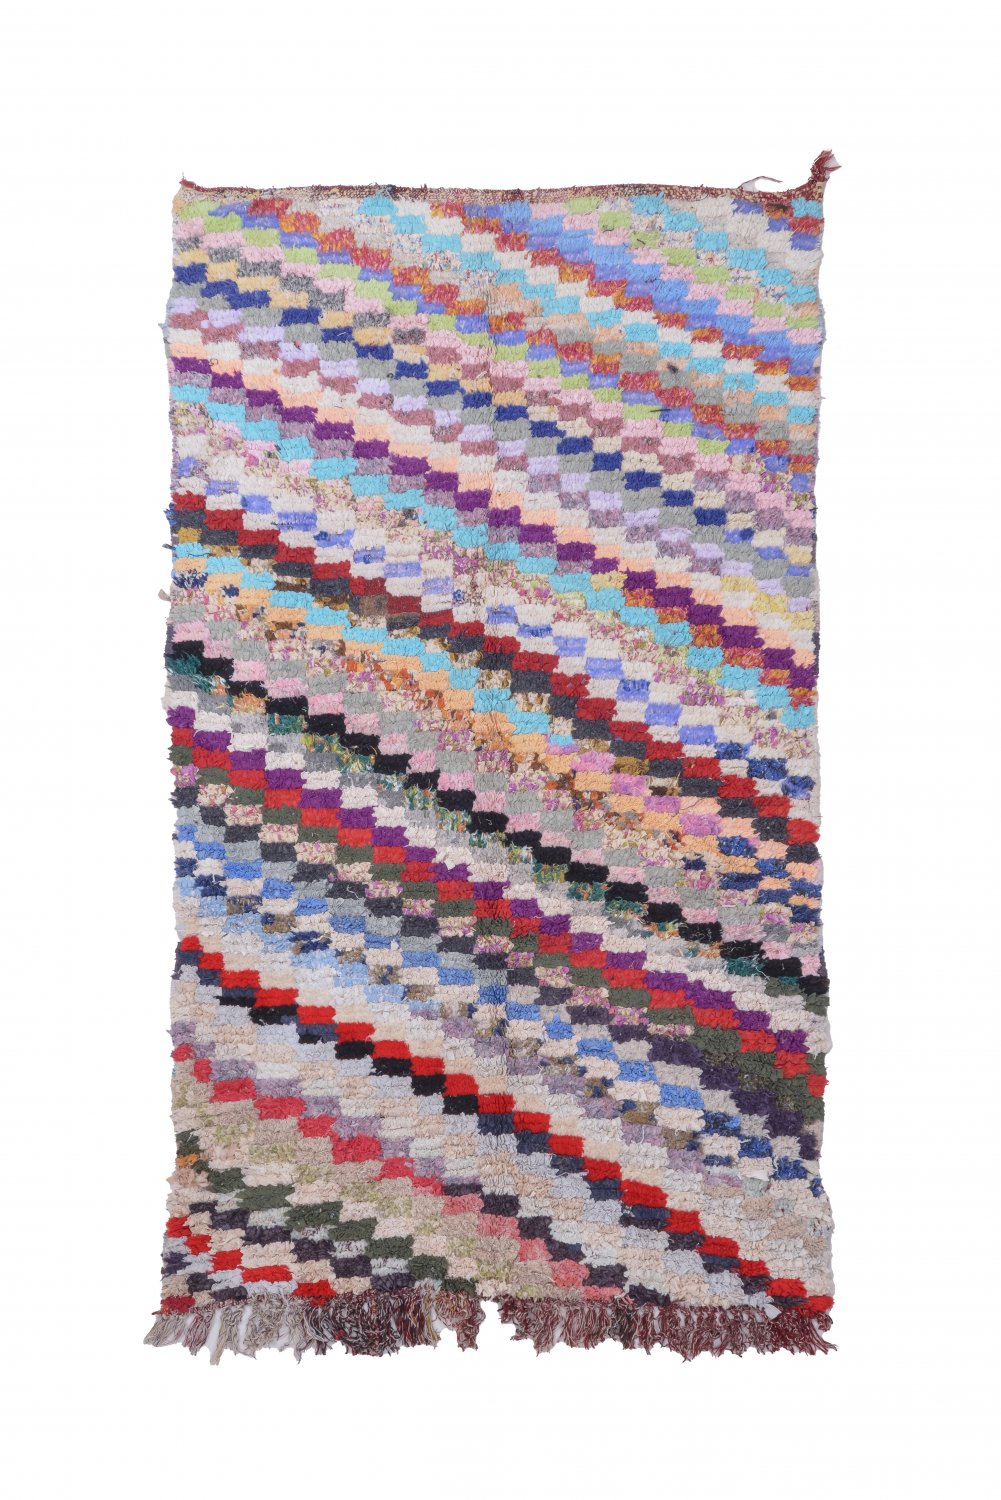 Marokkolainen Kilim matto Boucherouite 215 x 125 cm